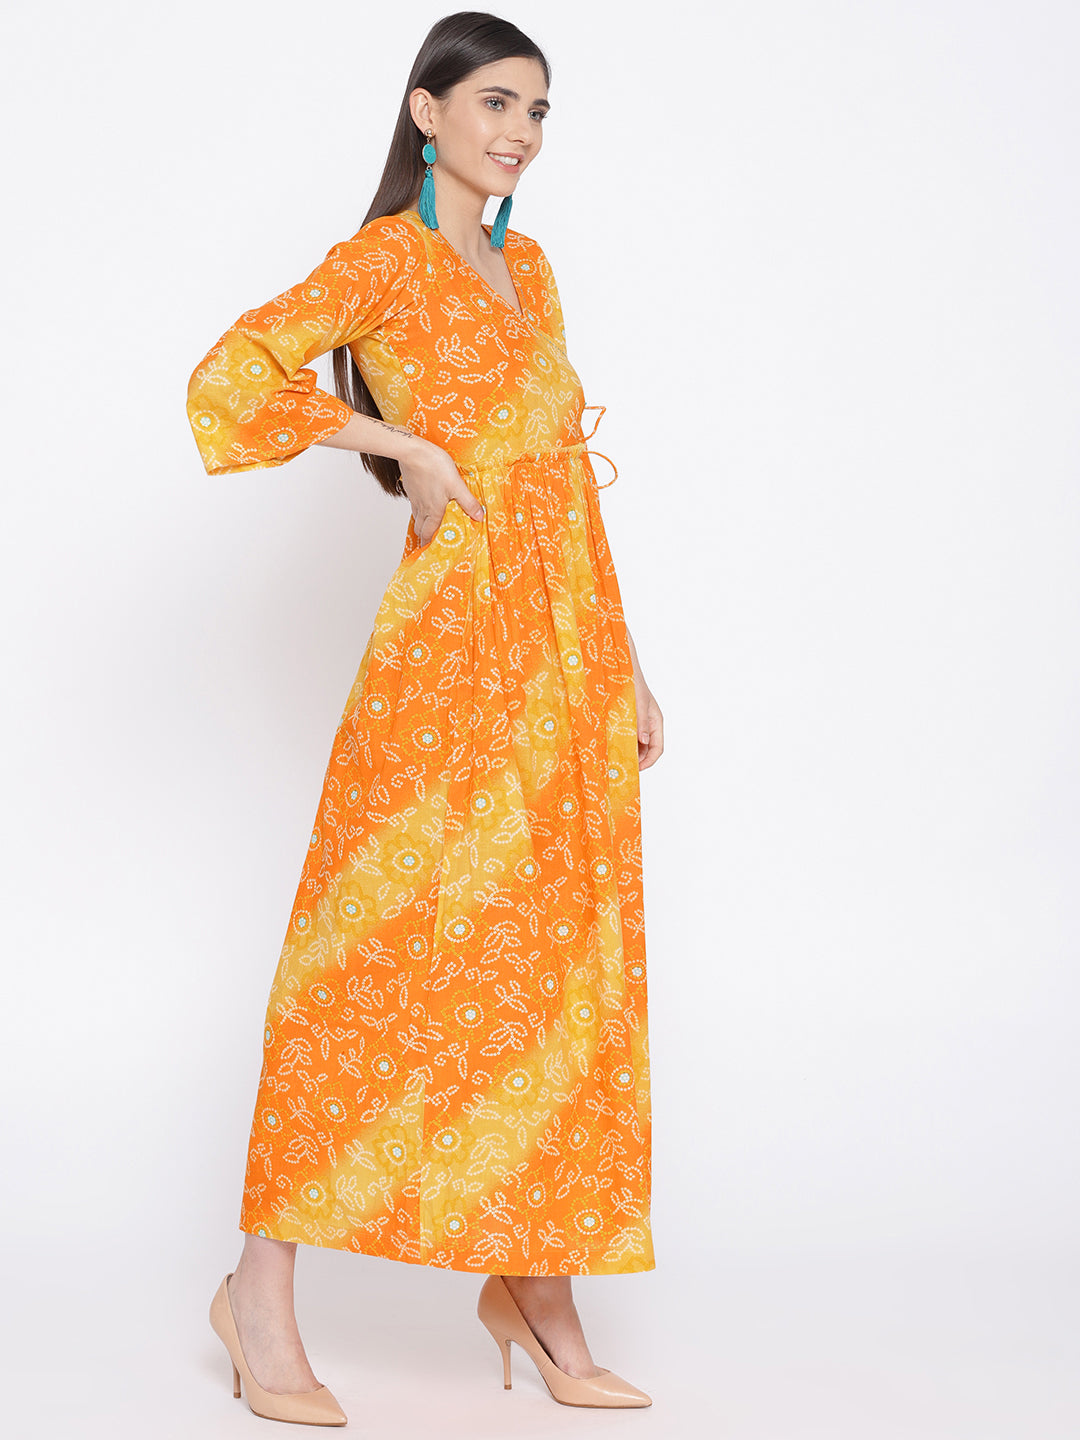 Women Orange and Yellow Bandhej Printed Cotton Kurta